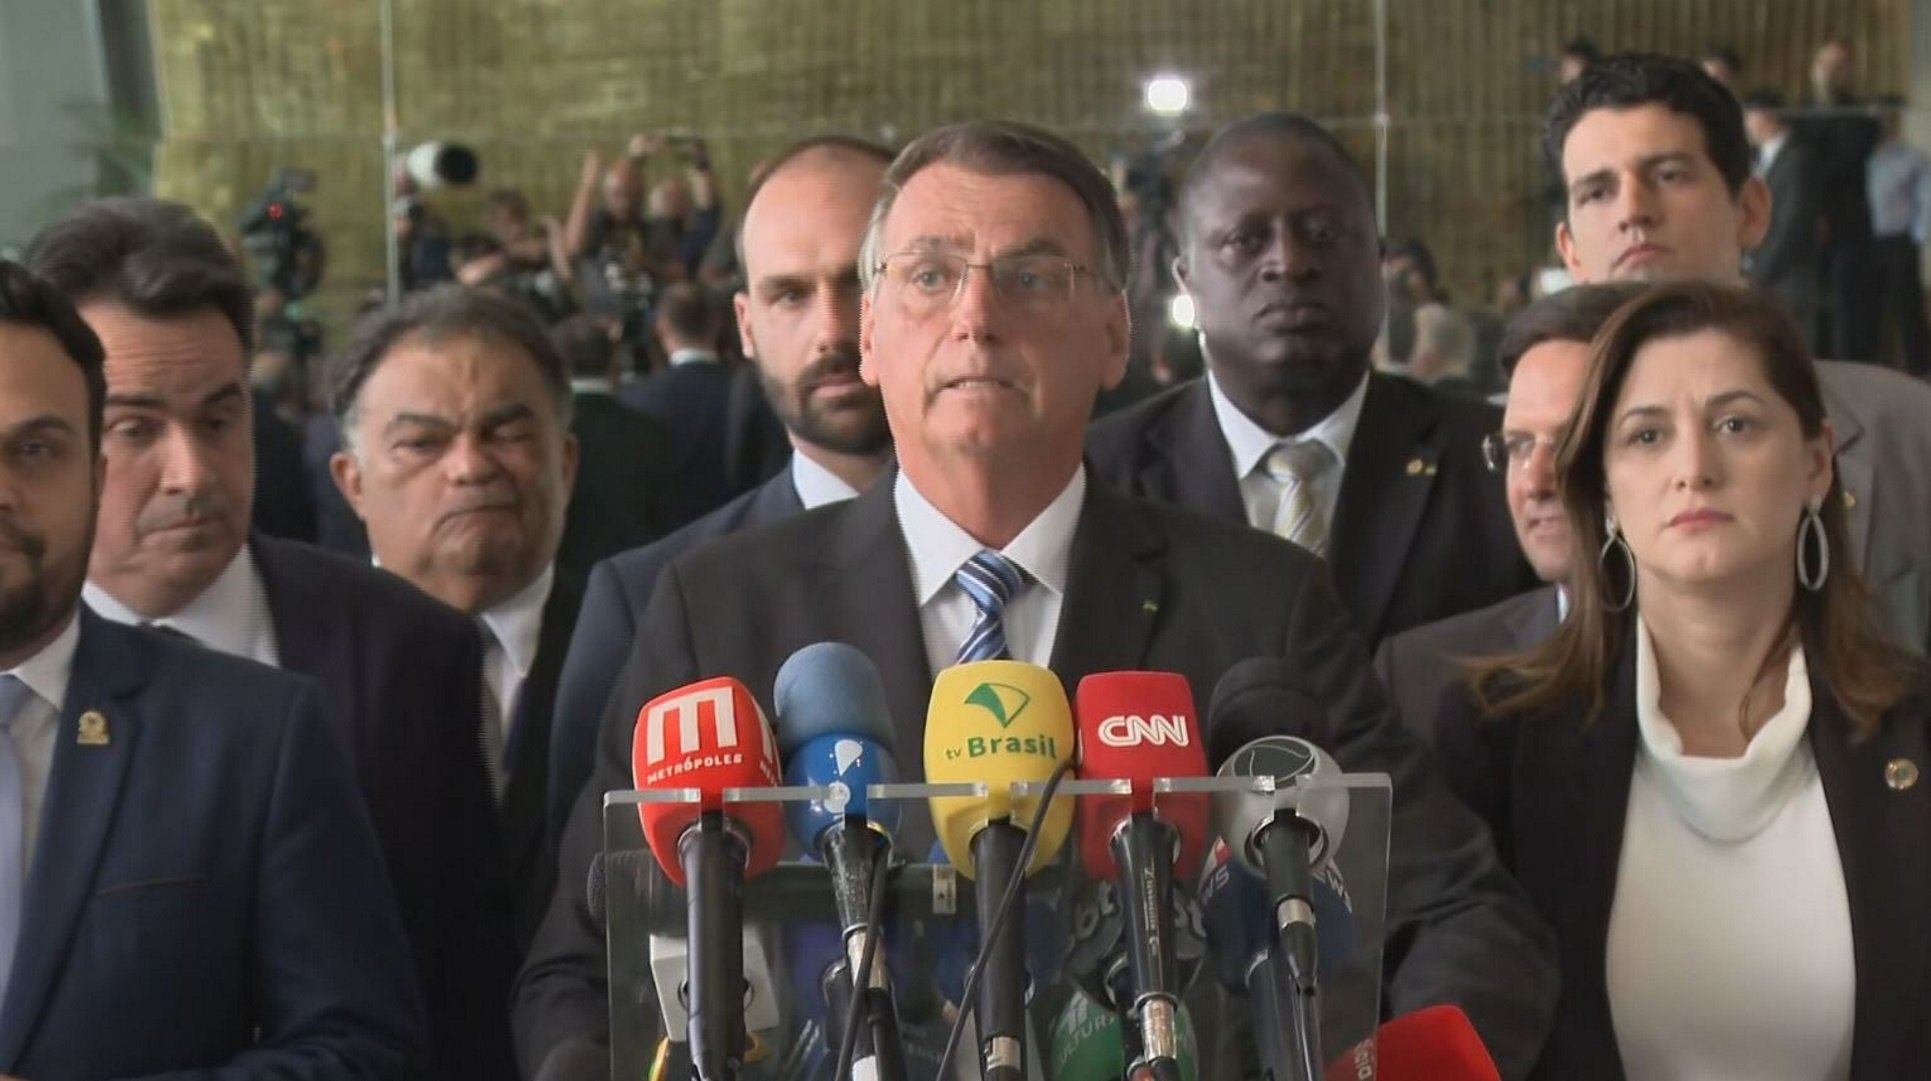 Bolsonaro assumeix la derrota i afirma que seguirà "sent fidel a la Constitució"